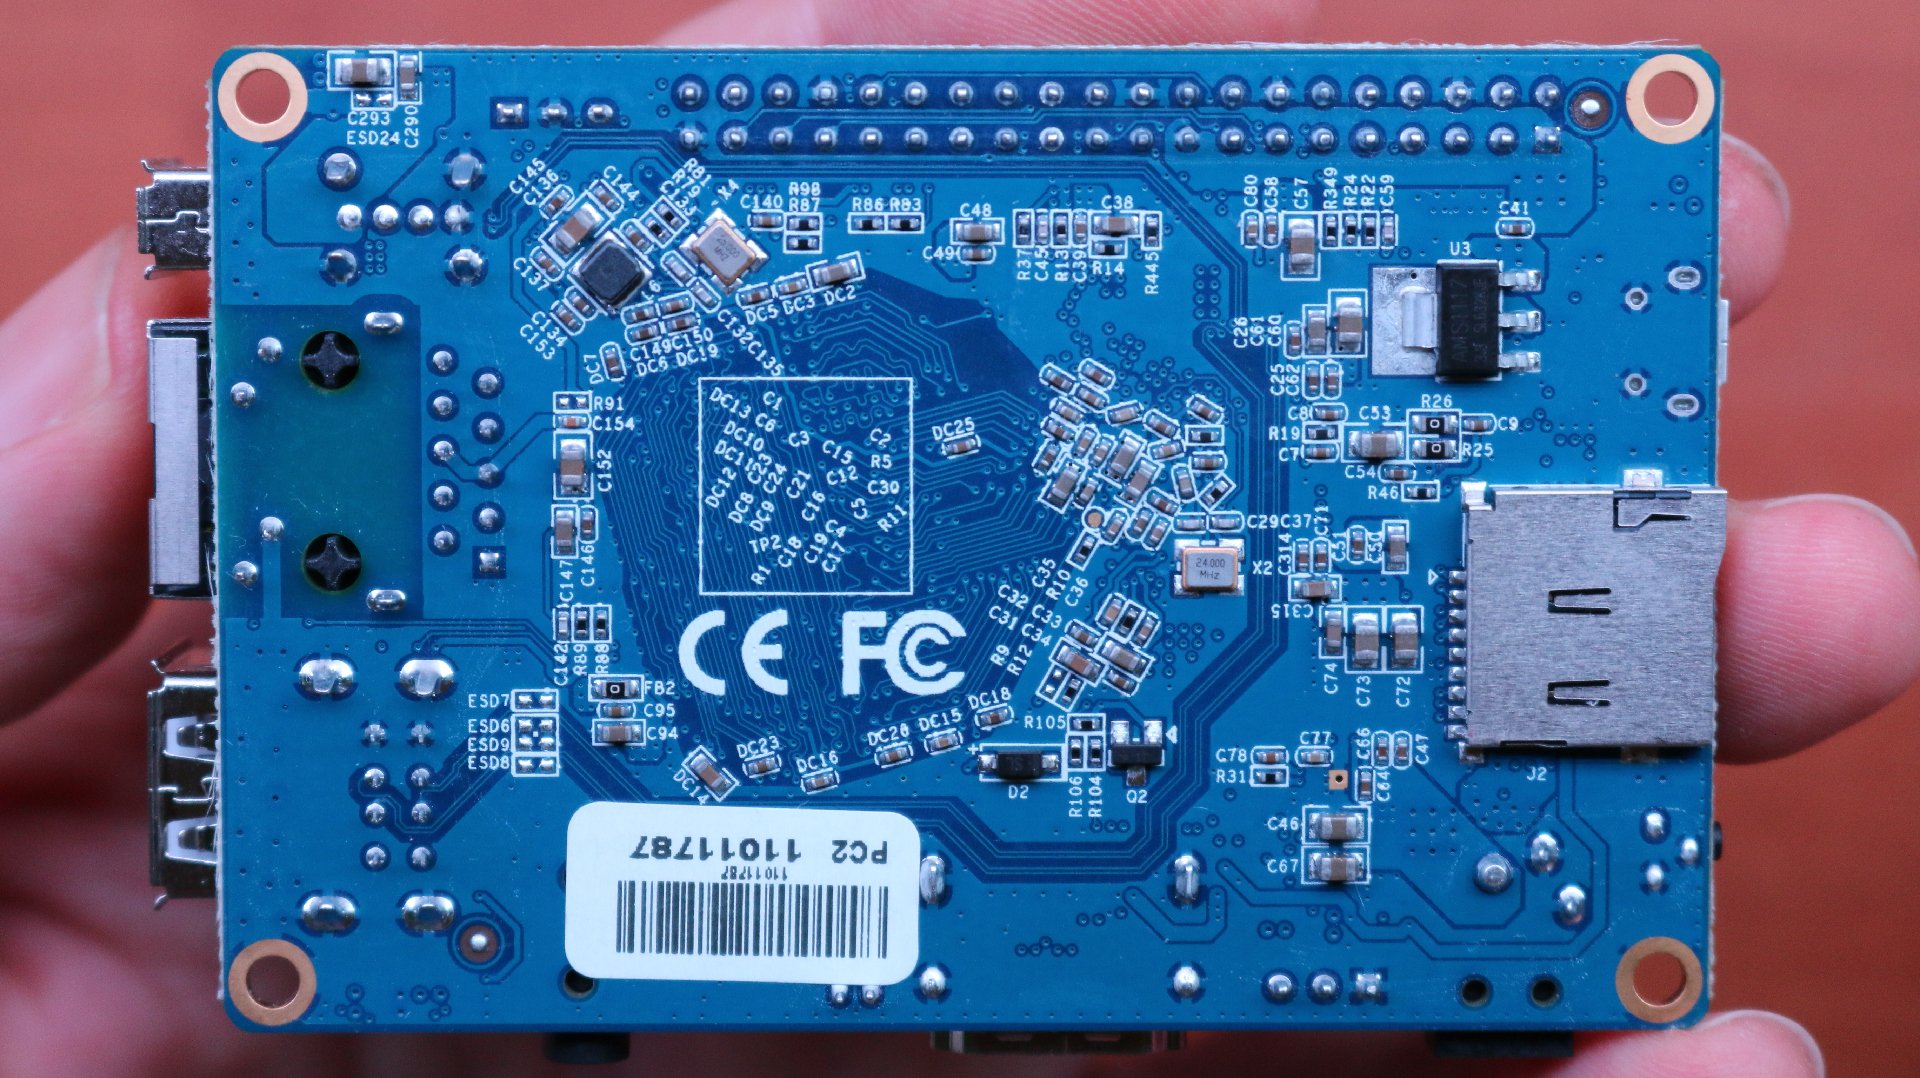 Orange Pi Lite 2/one plus h6 desarrollo Board quad-core 64bit 1gb ddr3 a3ge brazo